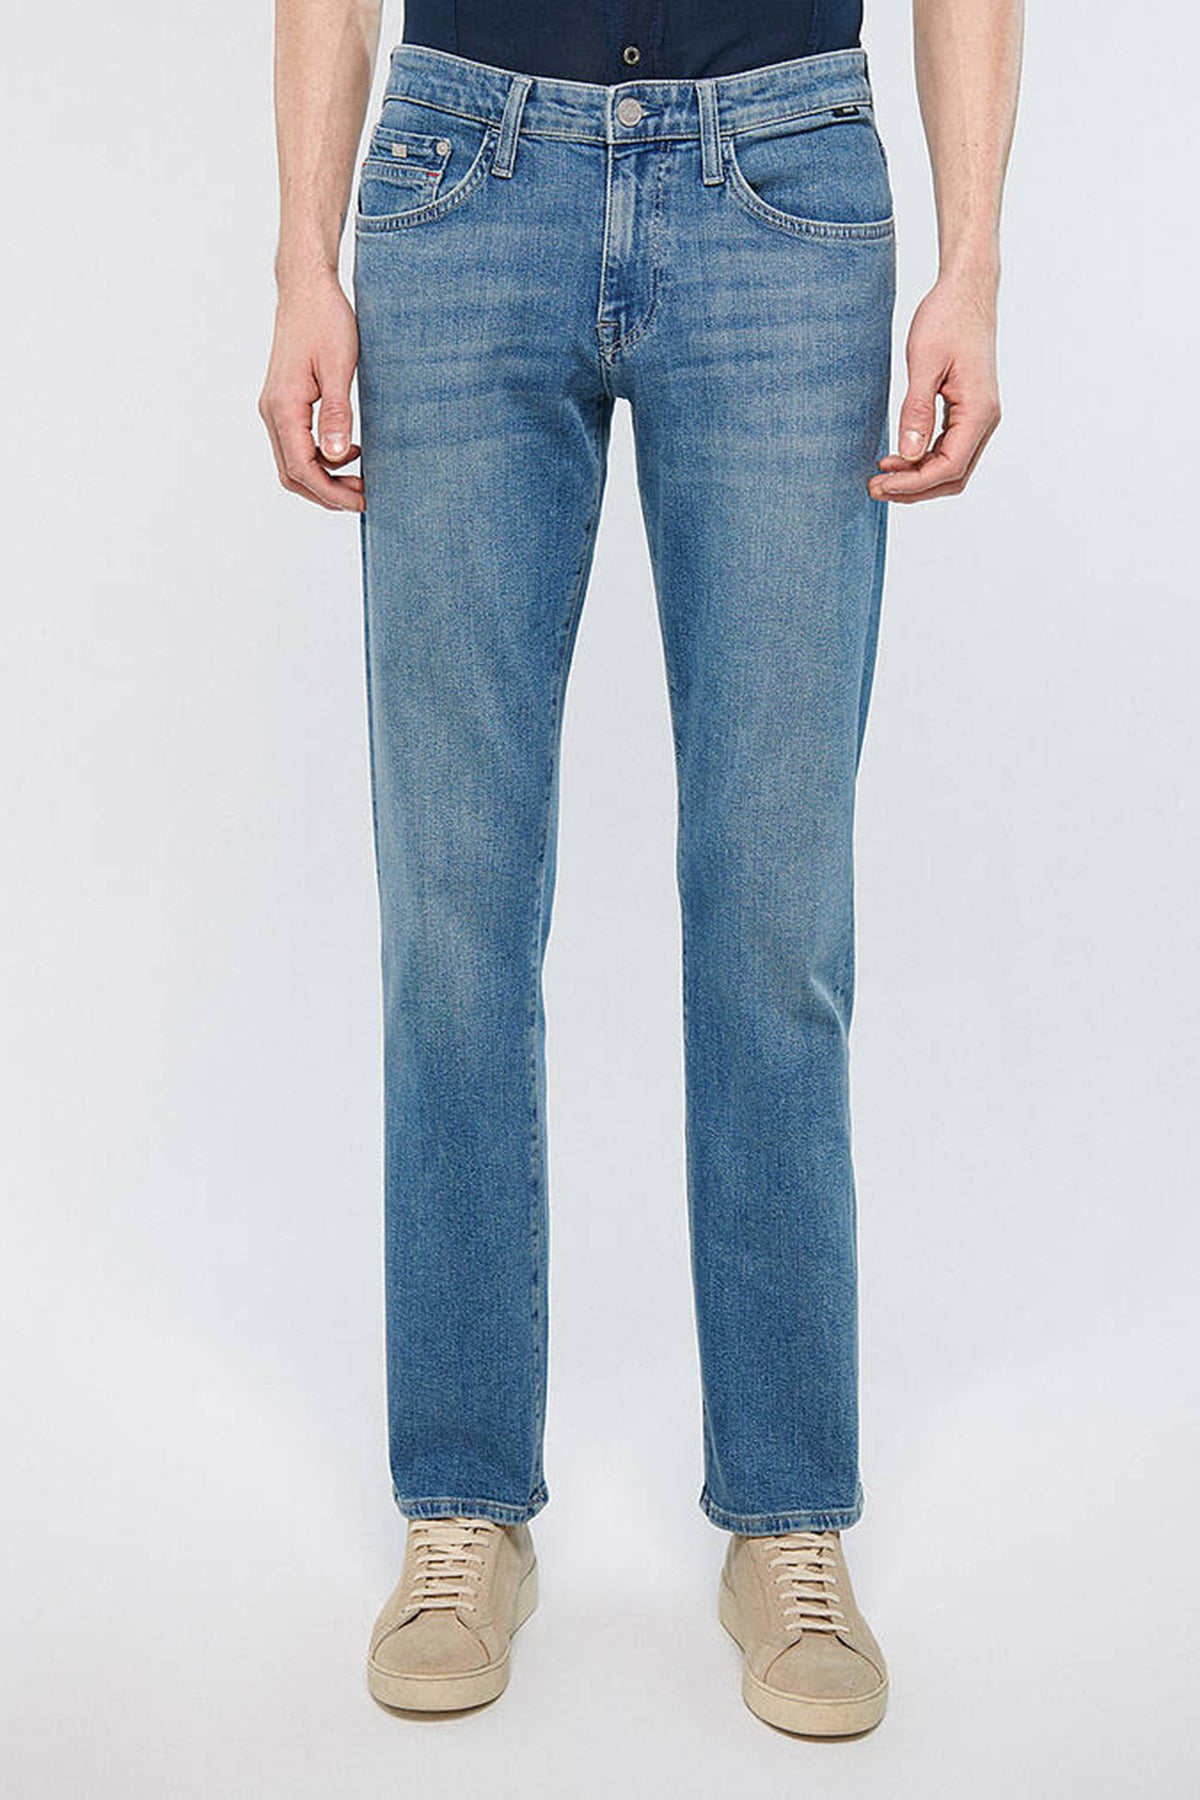 Mavi Pamuklu Regular Fit Düz Paça Hunter Jeans Erkek Kot Pantolon 0020233454 MAVİ